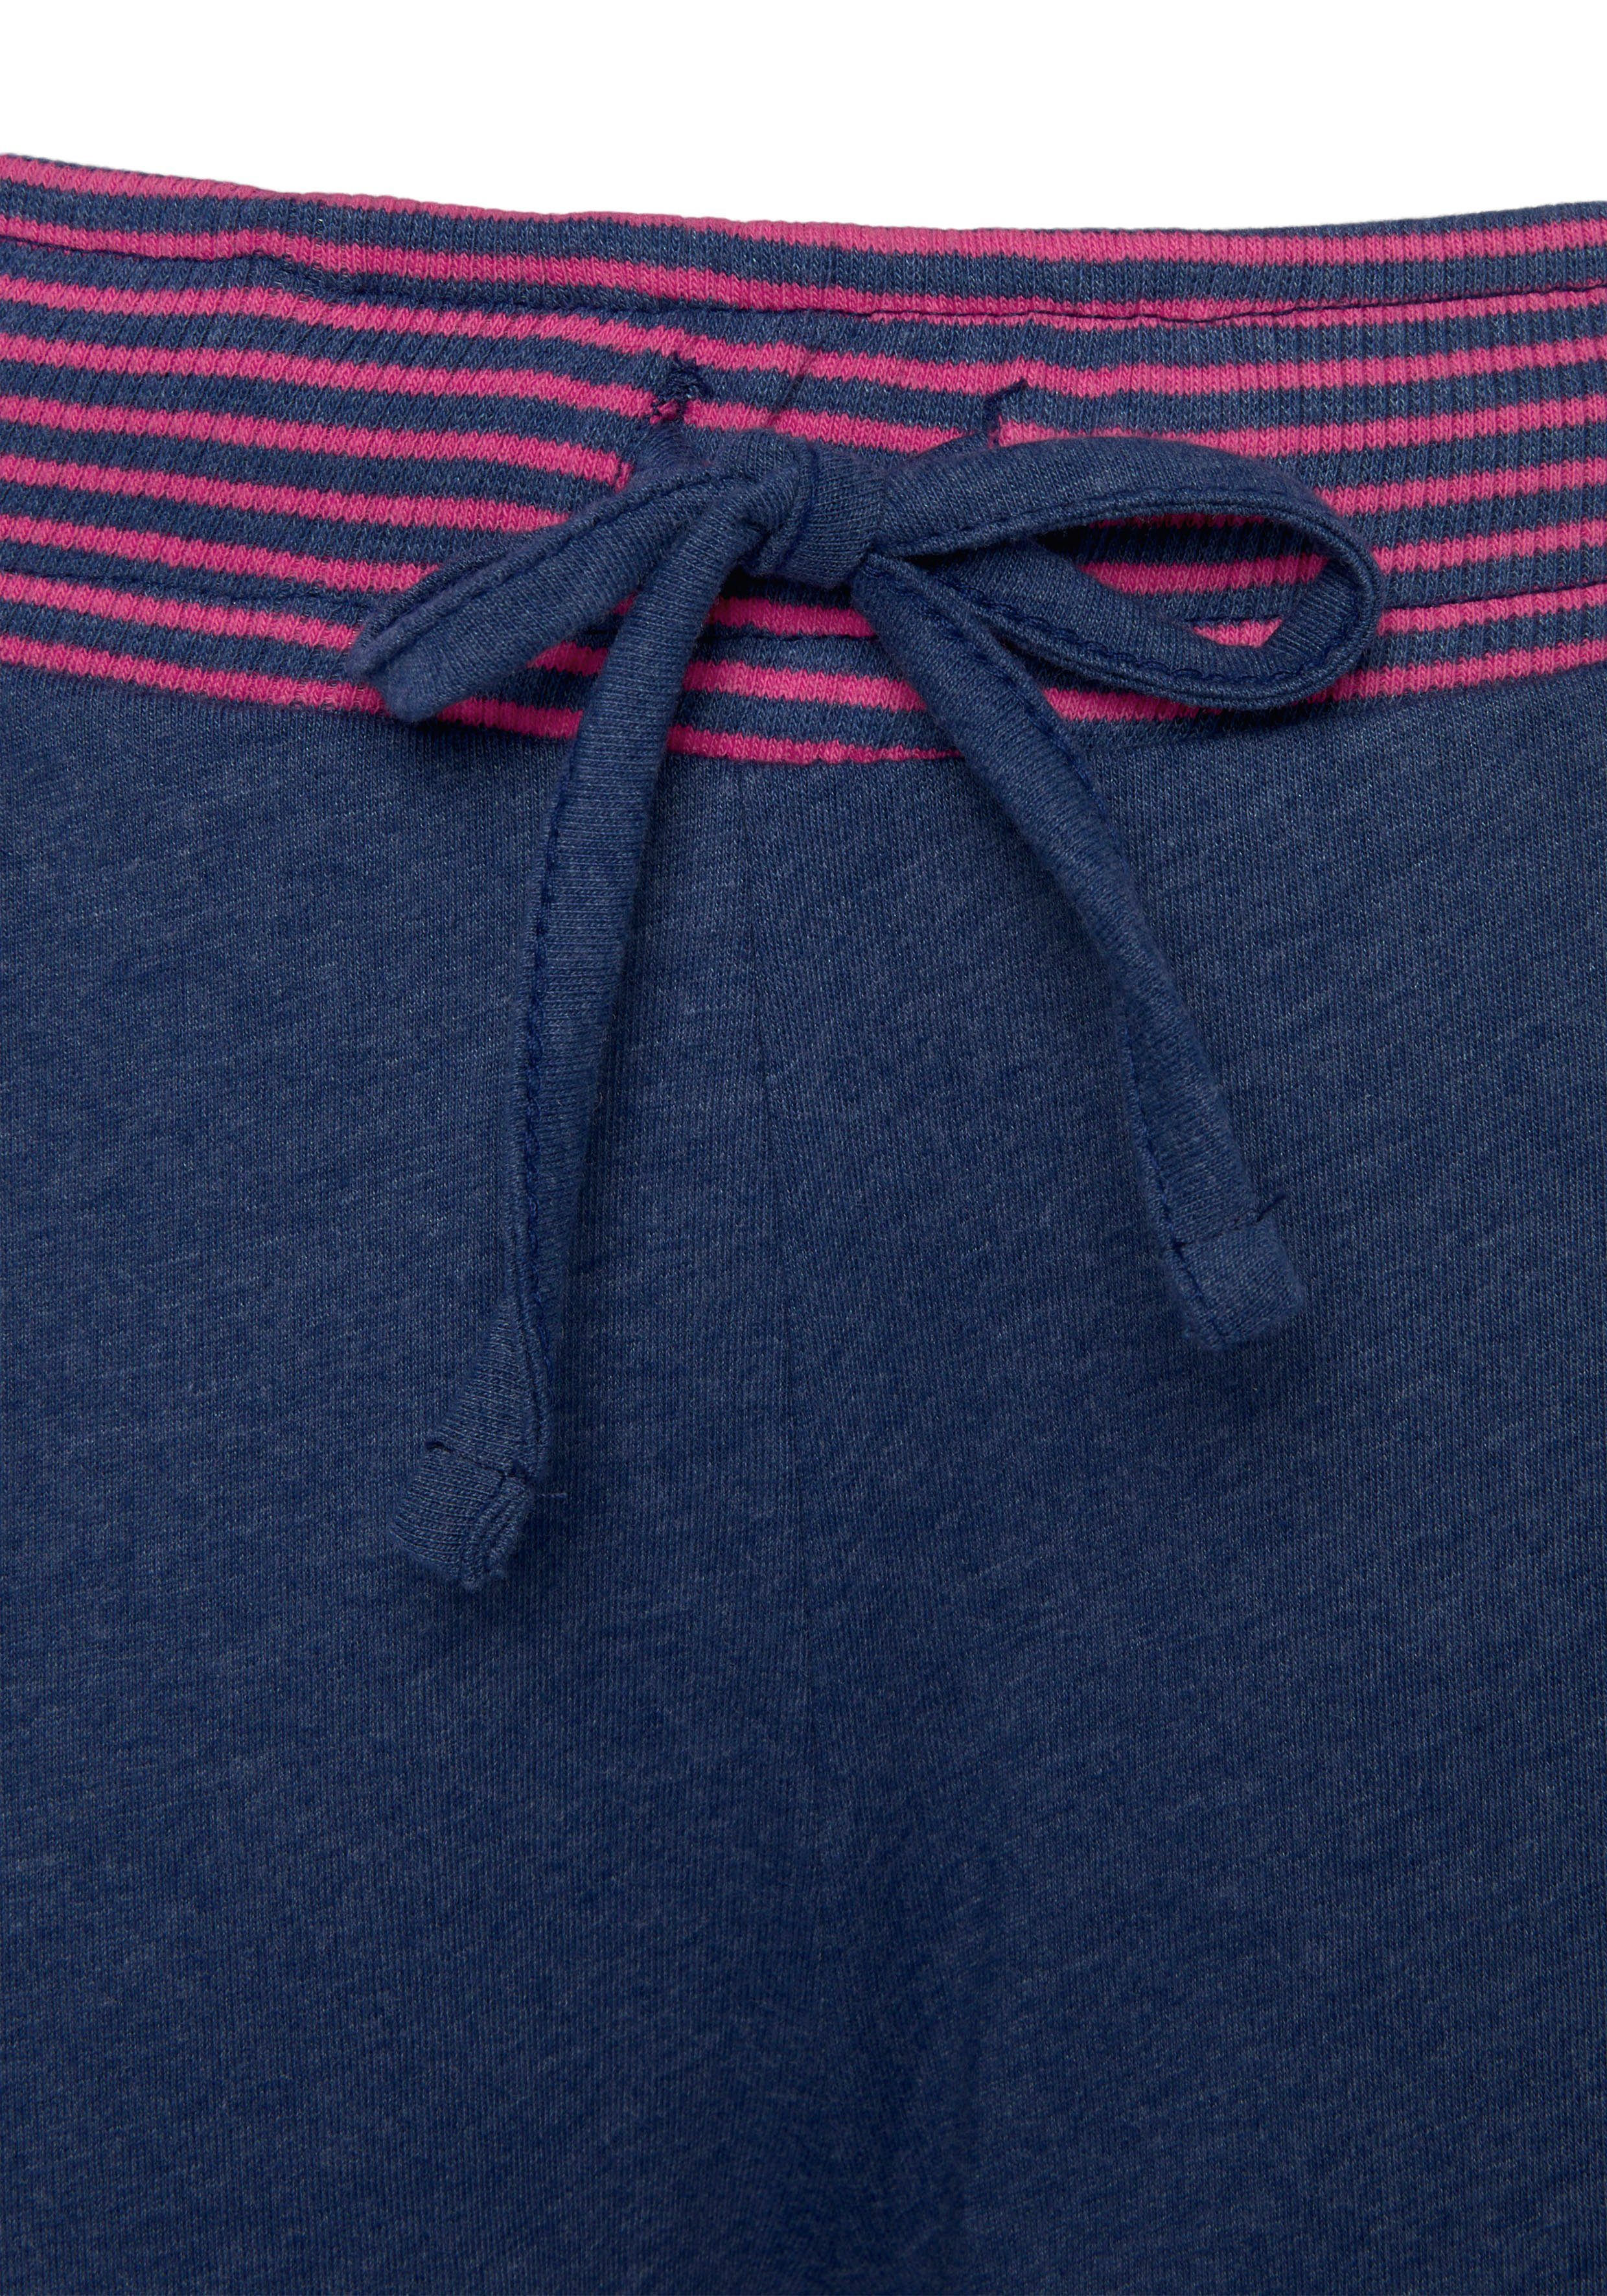 Vivance Dreams in (2 dekorativen Pyjama mit tlg) jeansblau/neon-pink Flatlock-Nähten Neonfarben